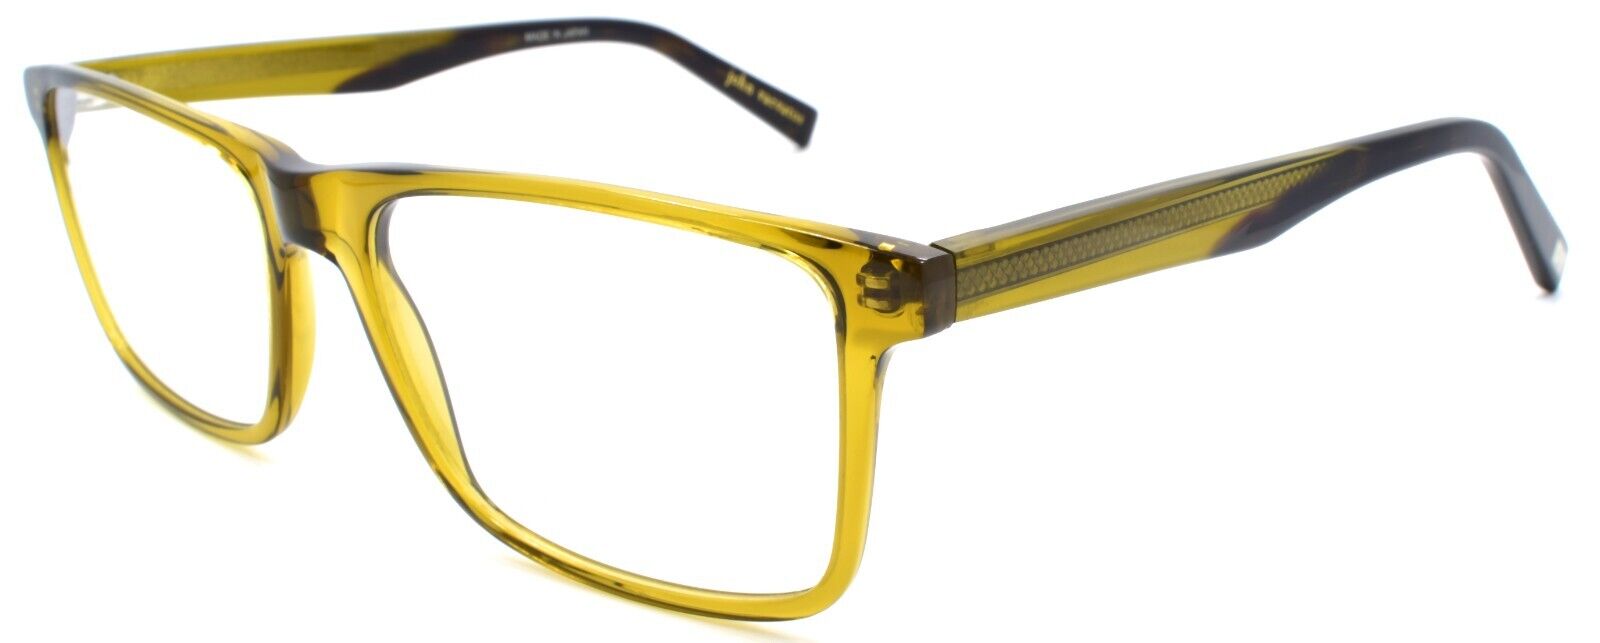 1-John Varvatos V374 Men's Eyeglasses Frames 55-17-145 Olive Japan-751286306187-IKSpecs